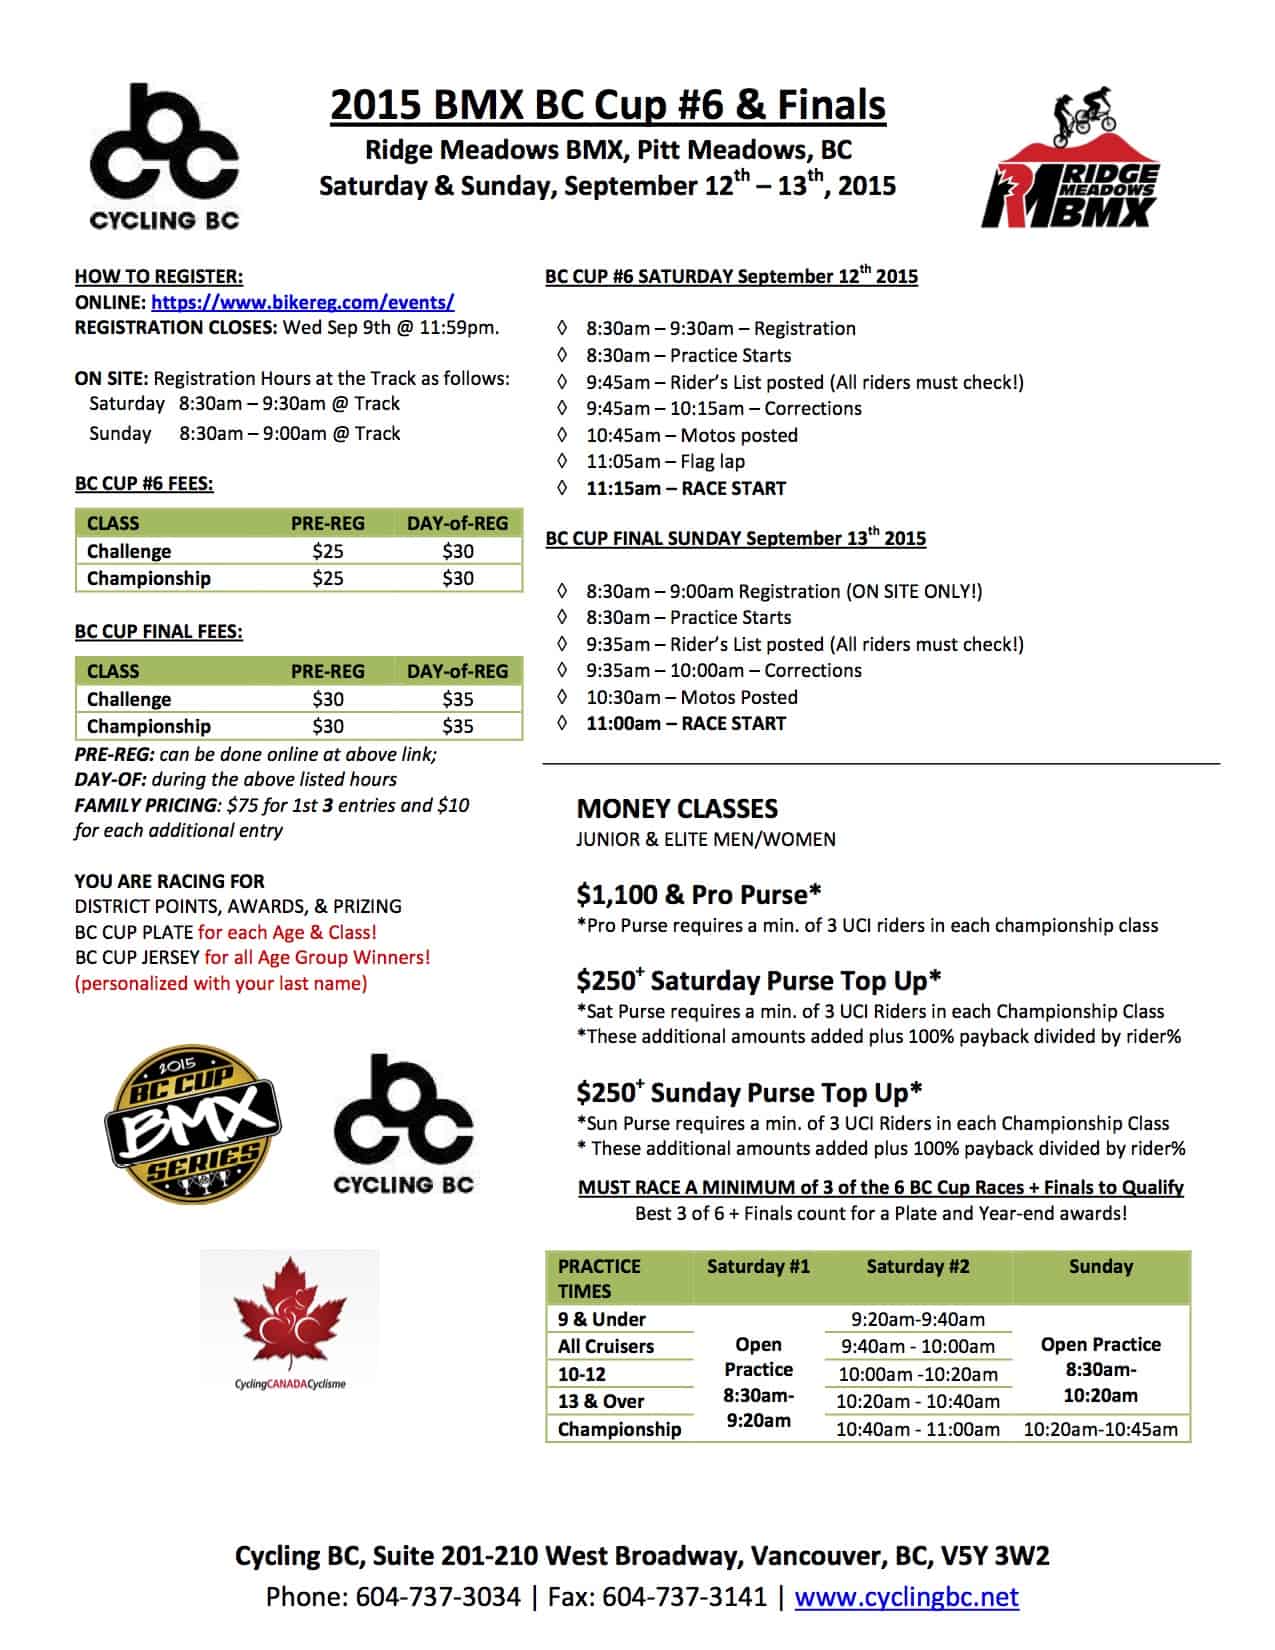 PDF - 2015 BMX BC Cup 6 & FINALS RMBA copy